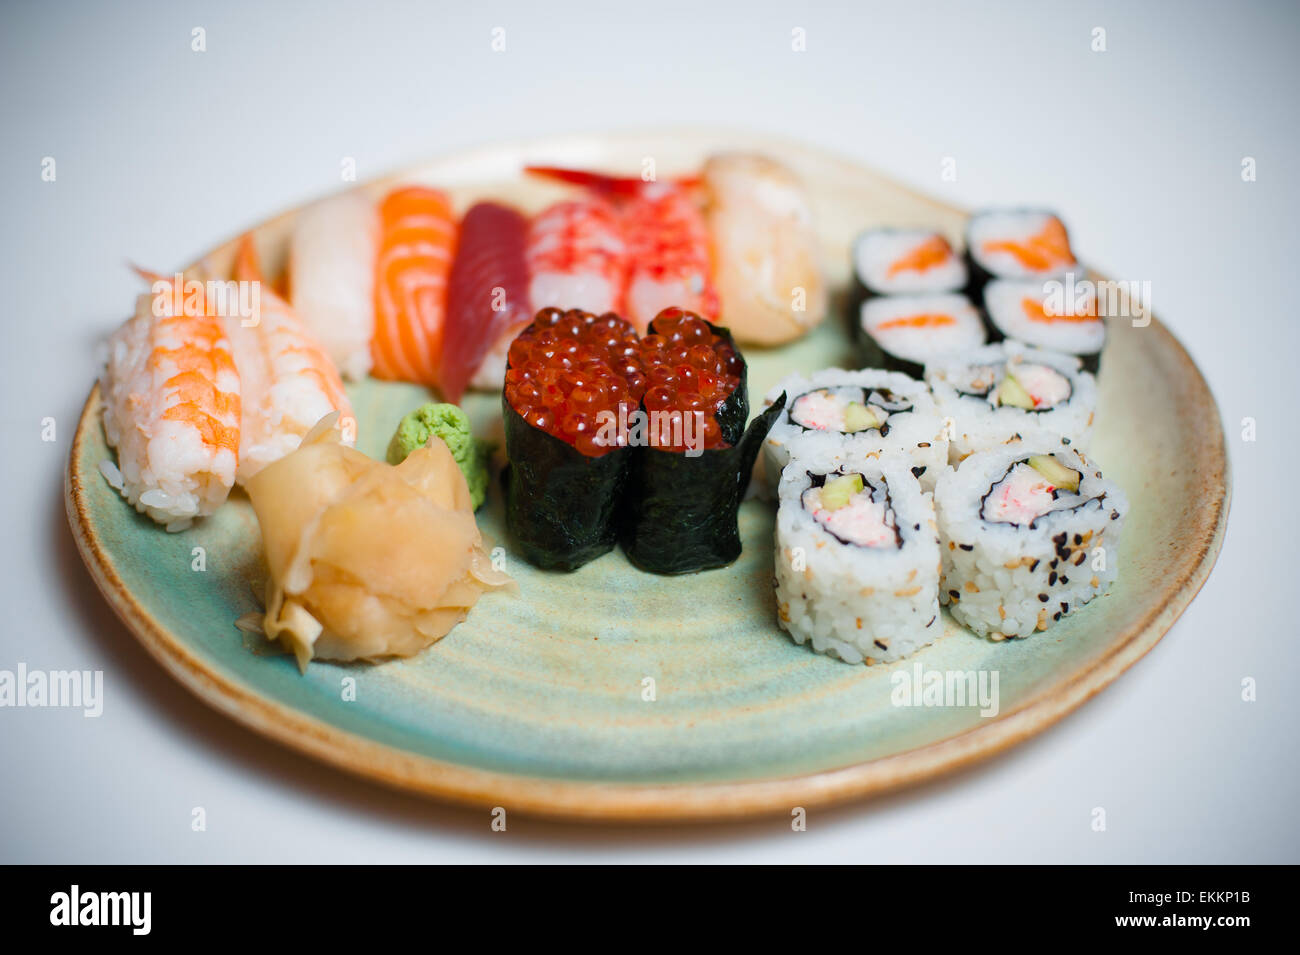 Sushi mixte Plaque sur fond blanc, selective focus on gunkan Banque D'Images